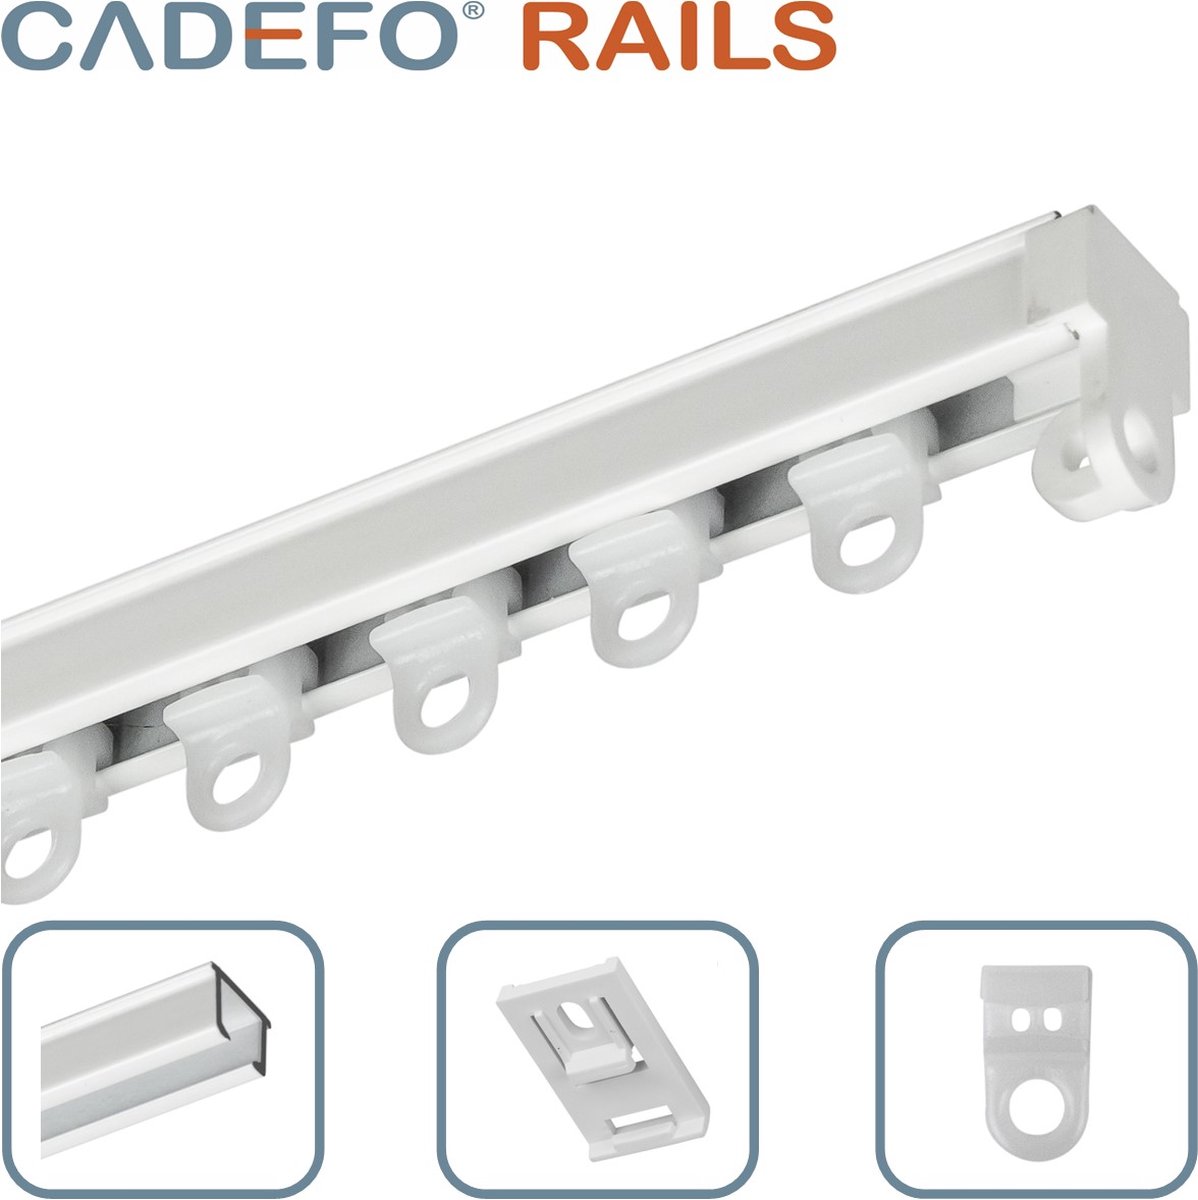 CADEFO RAILS (551 - 600 cm) Gordijnrails - Compleet op maat! - UIT 1 STUK - Leverbaar tot 6 meter - Plafondbevestiging - Lengte 578 cm